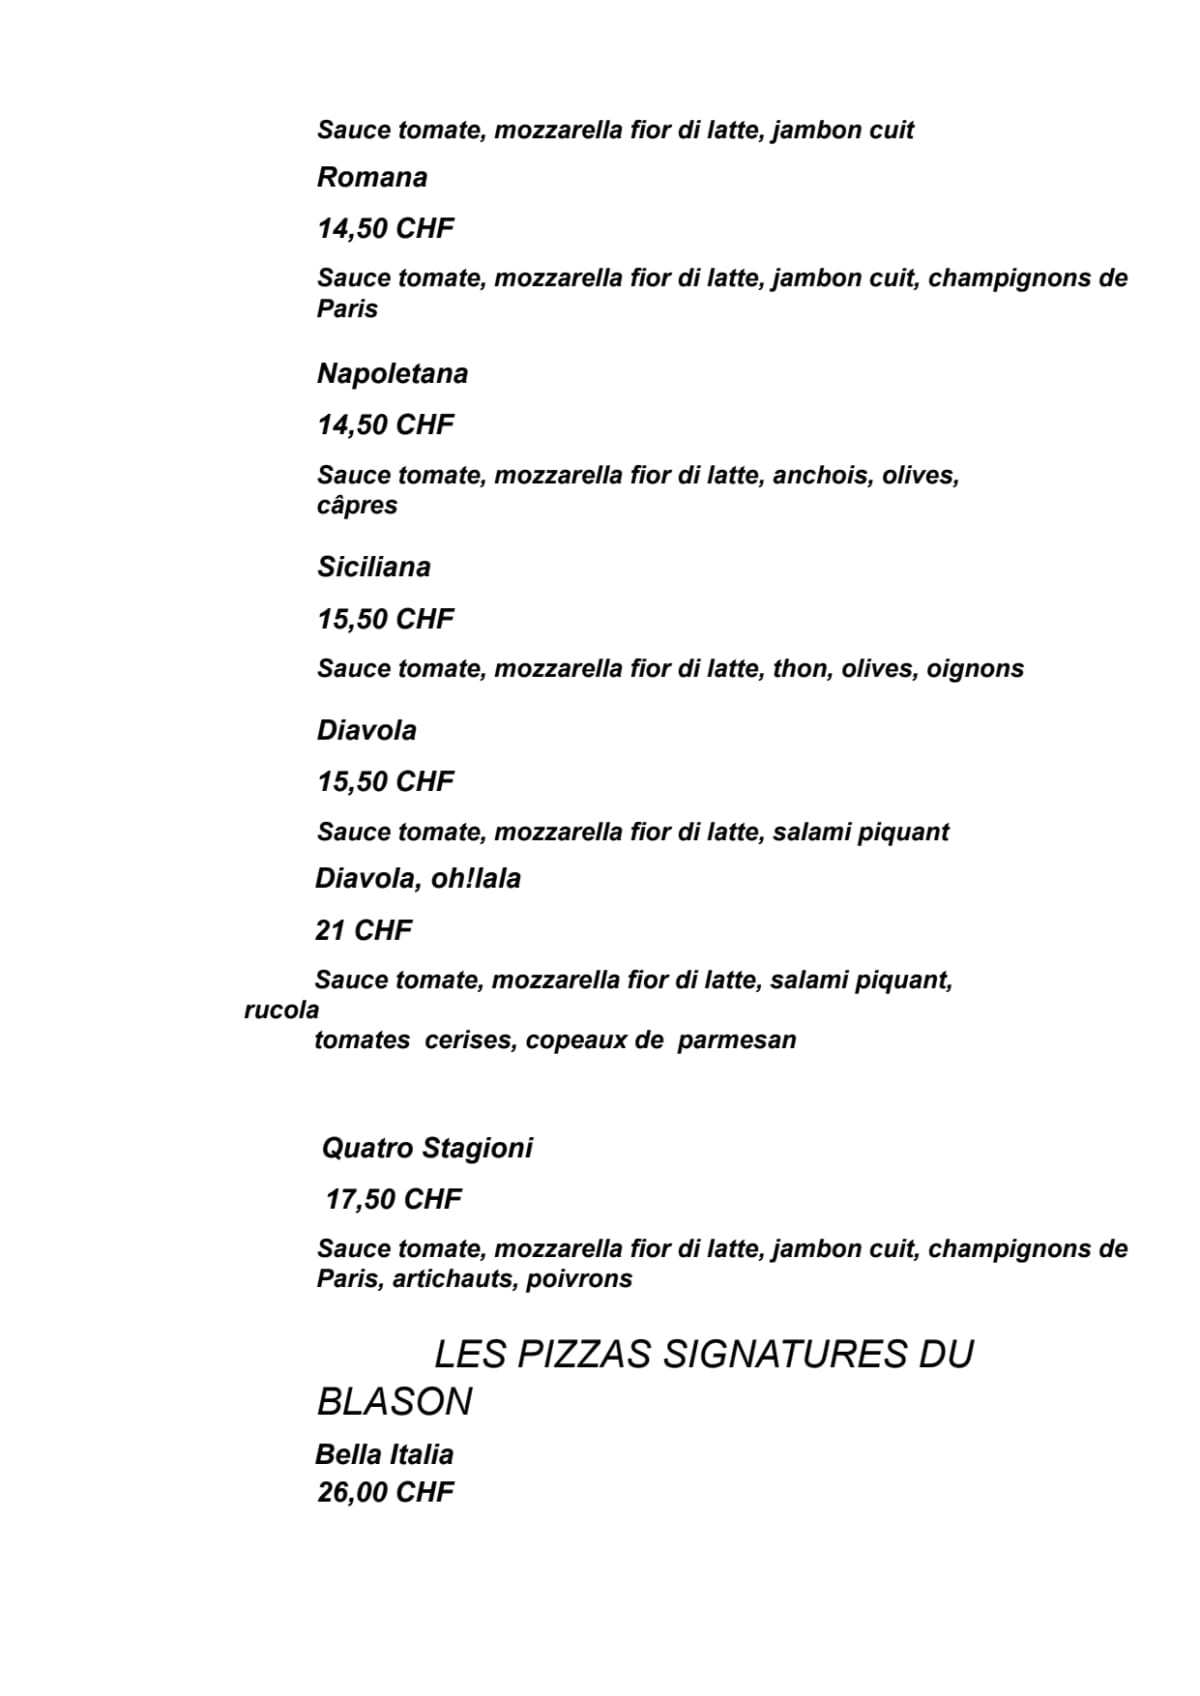 Le Blason menu